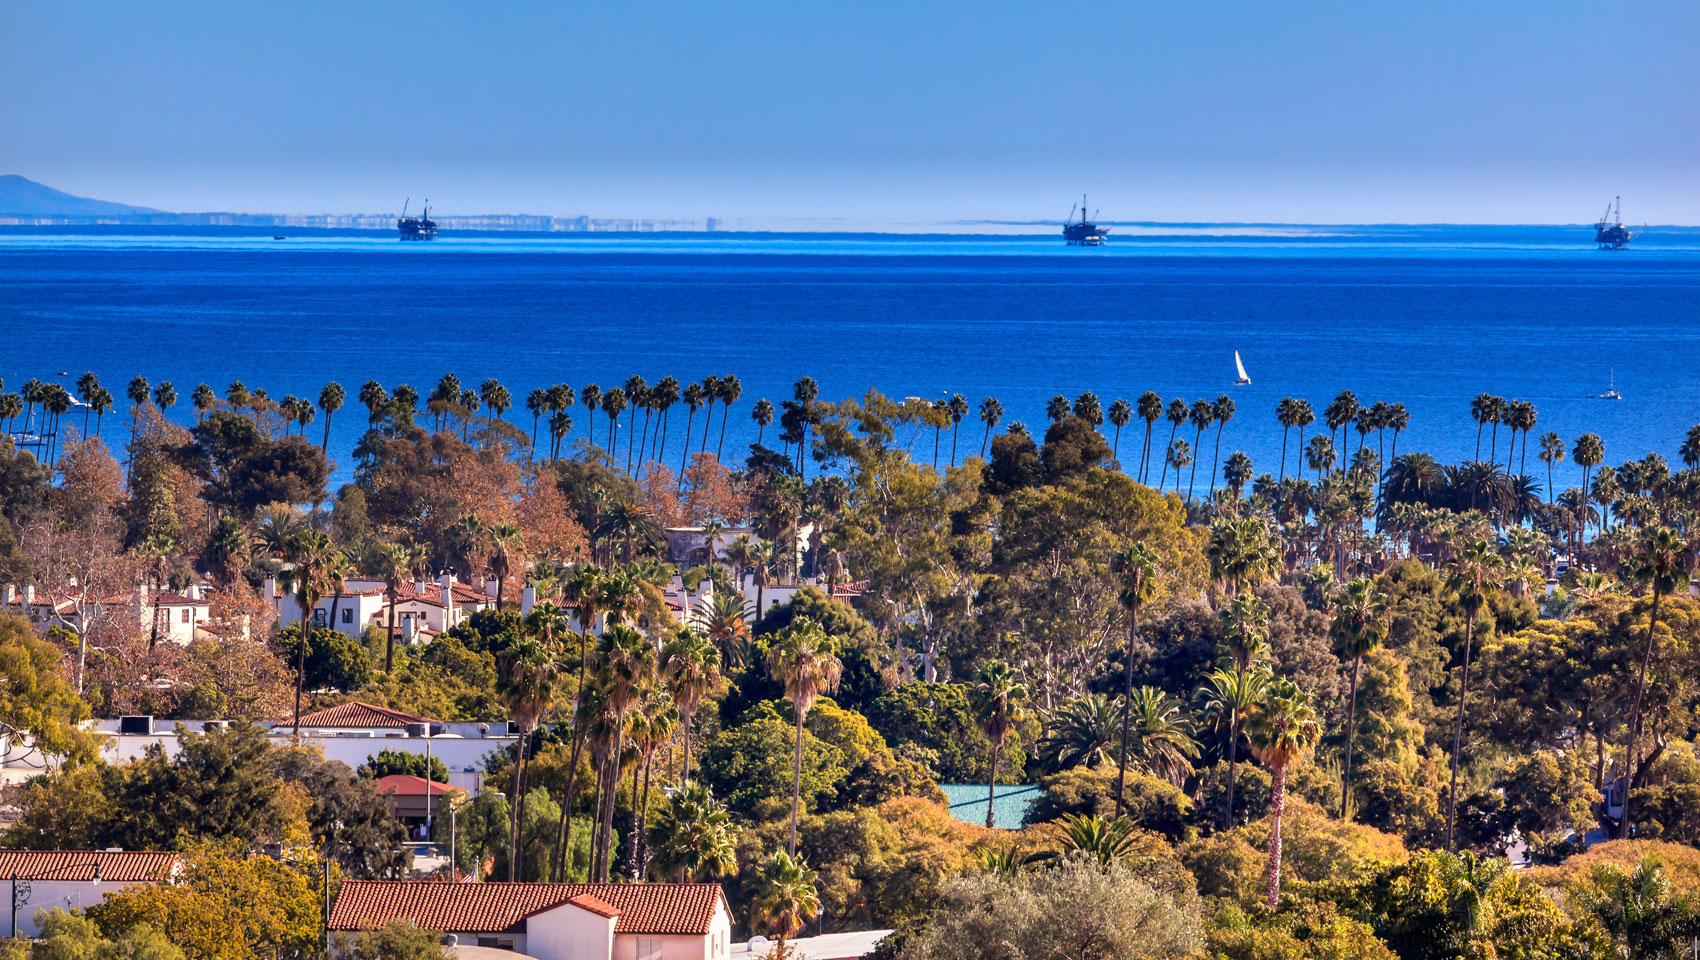 Santa Barbara palm trees and ocean